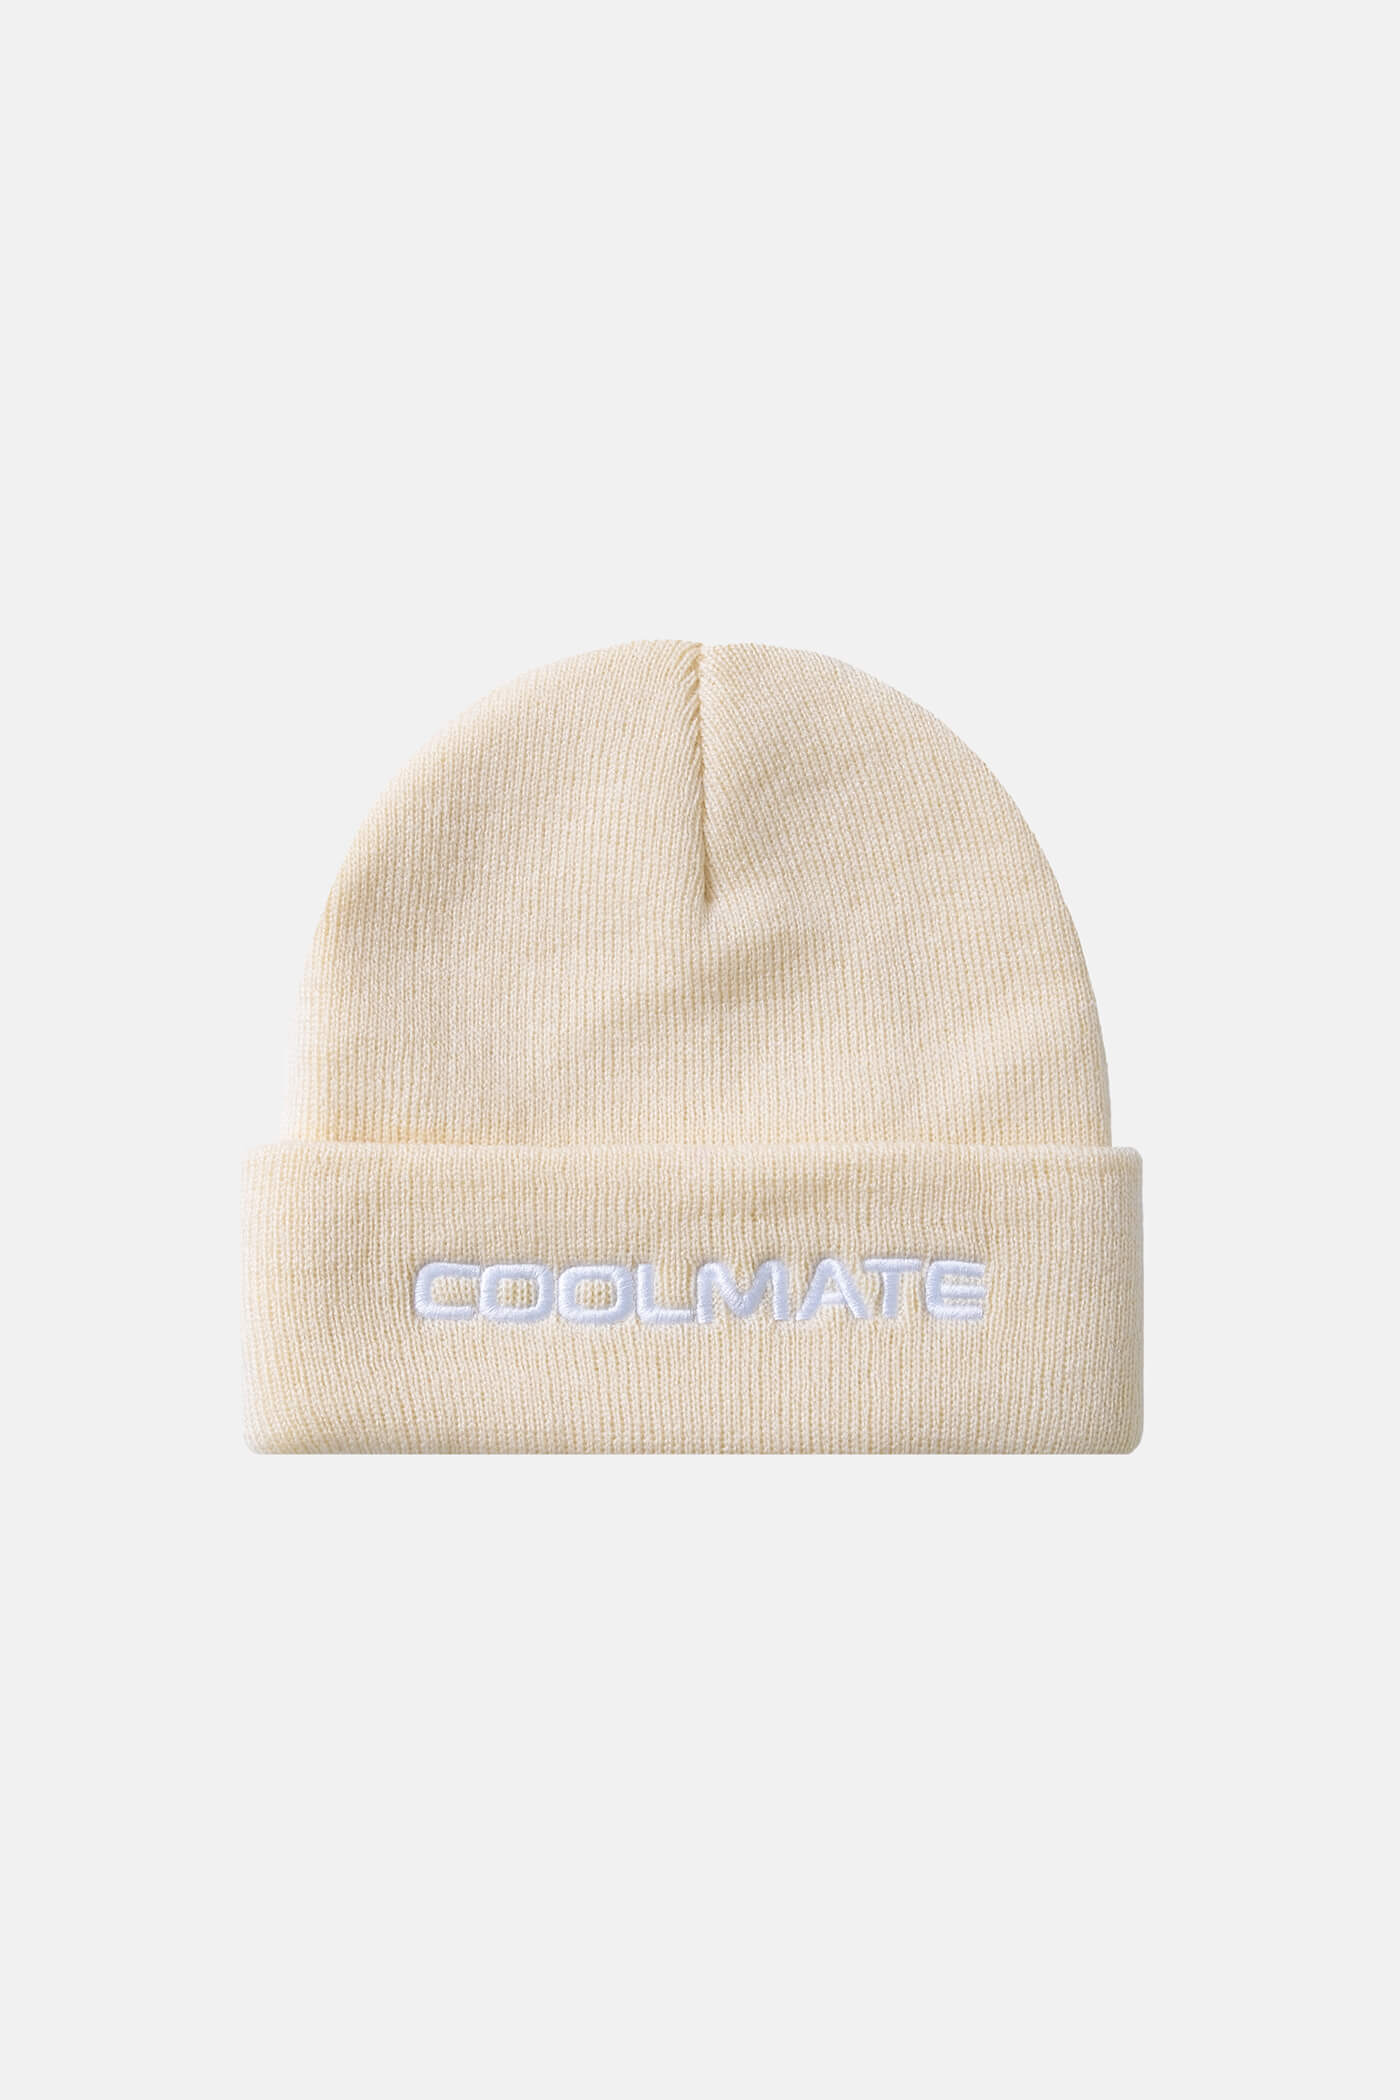 Mũ len thêu logo Coolmate chỉ 69k cho đơn hàng từ 299k Kem